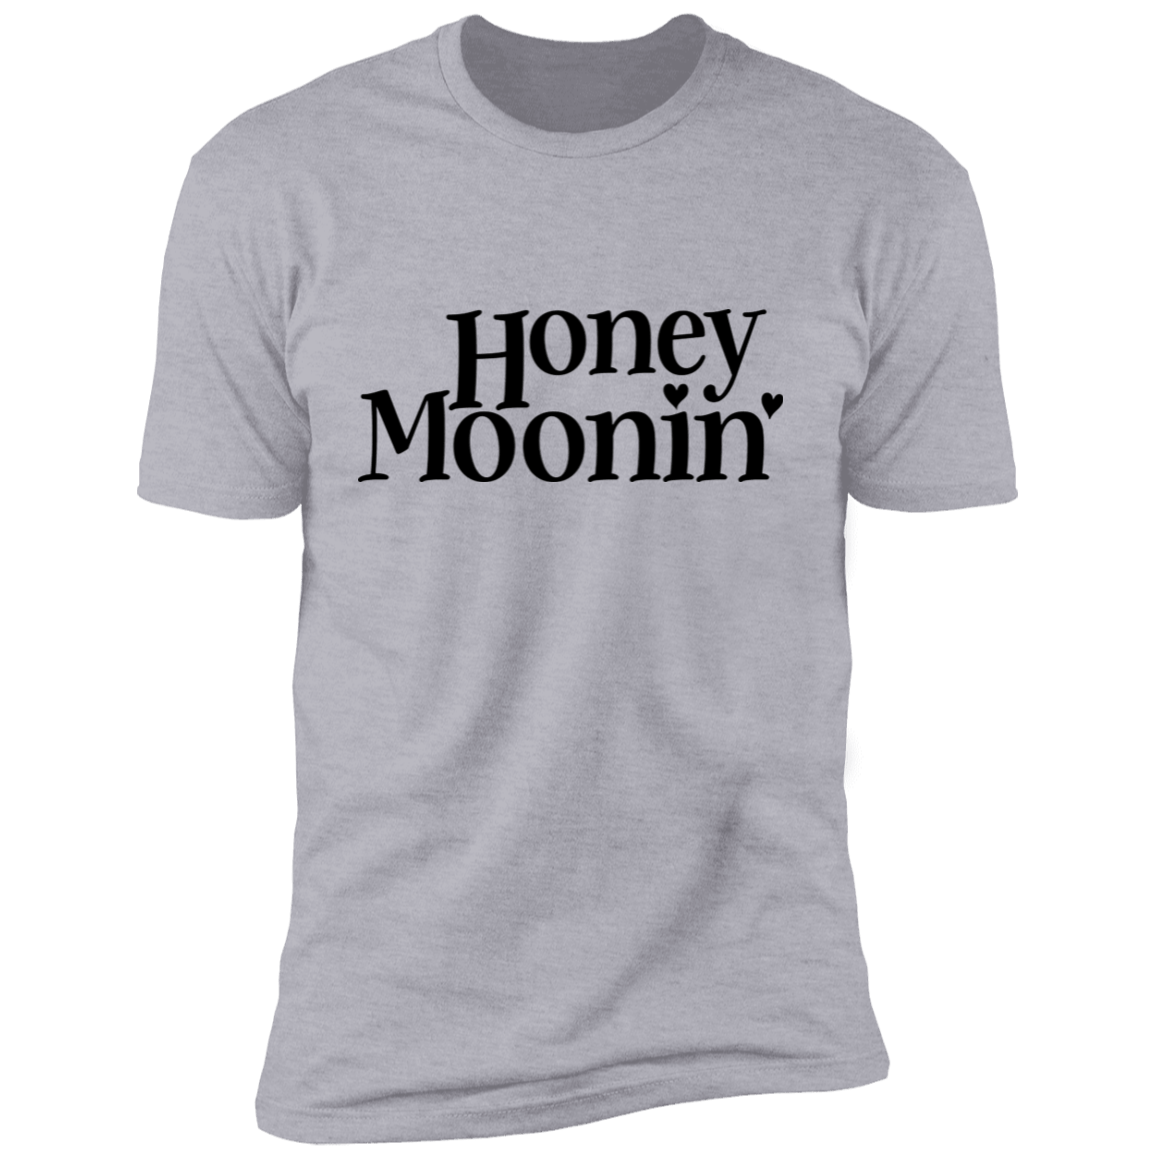 Honey Moonin' With Heart